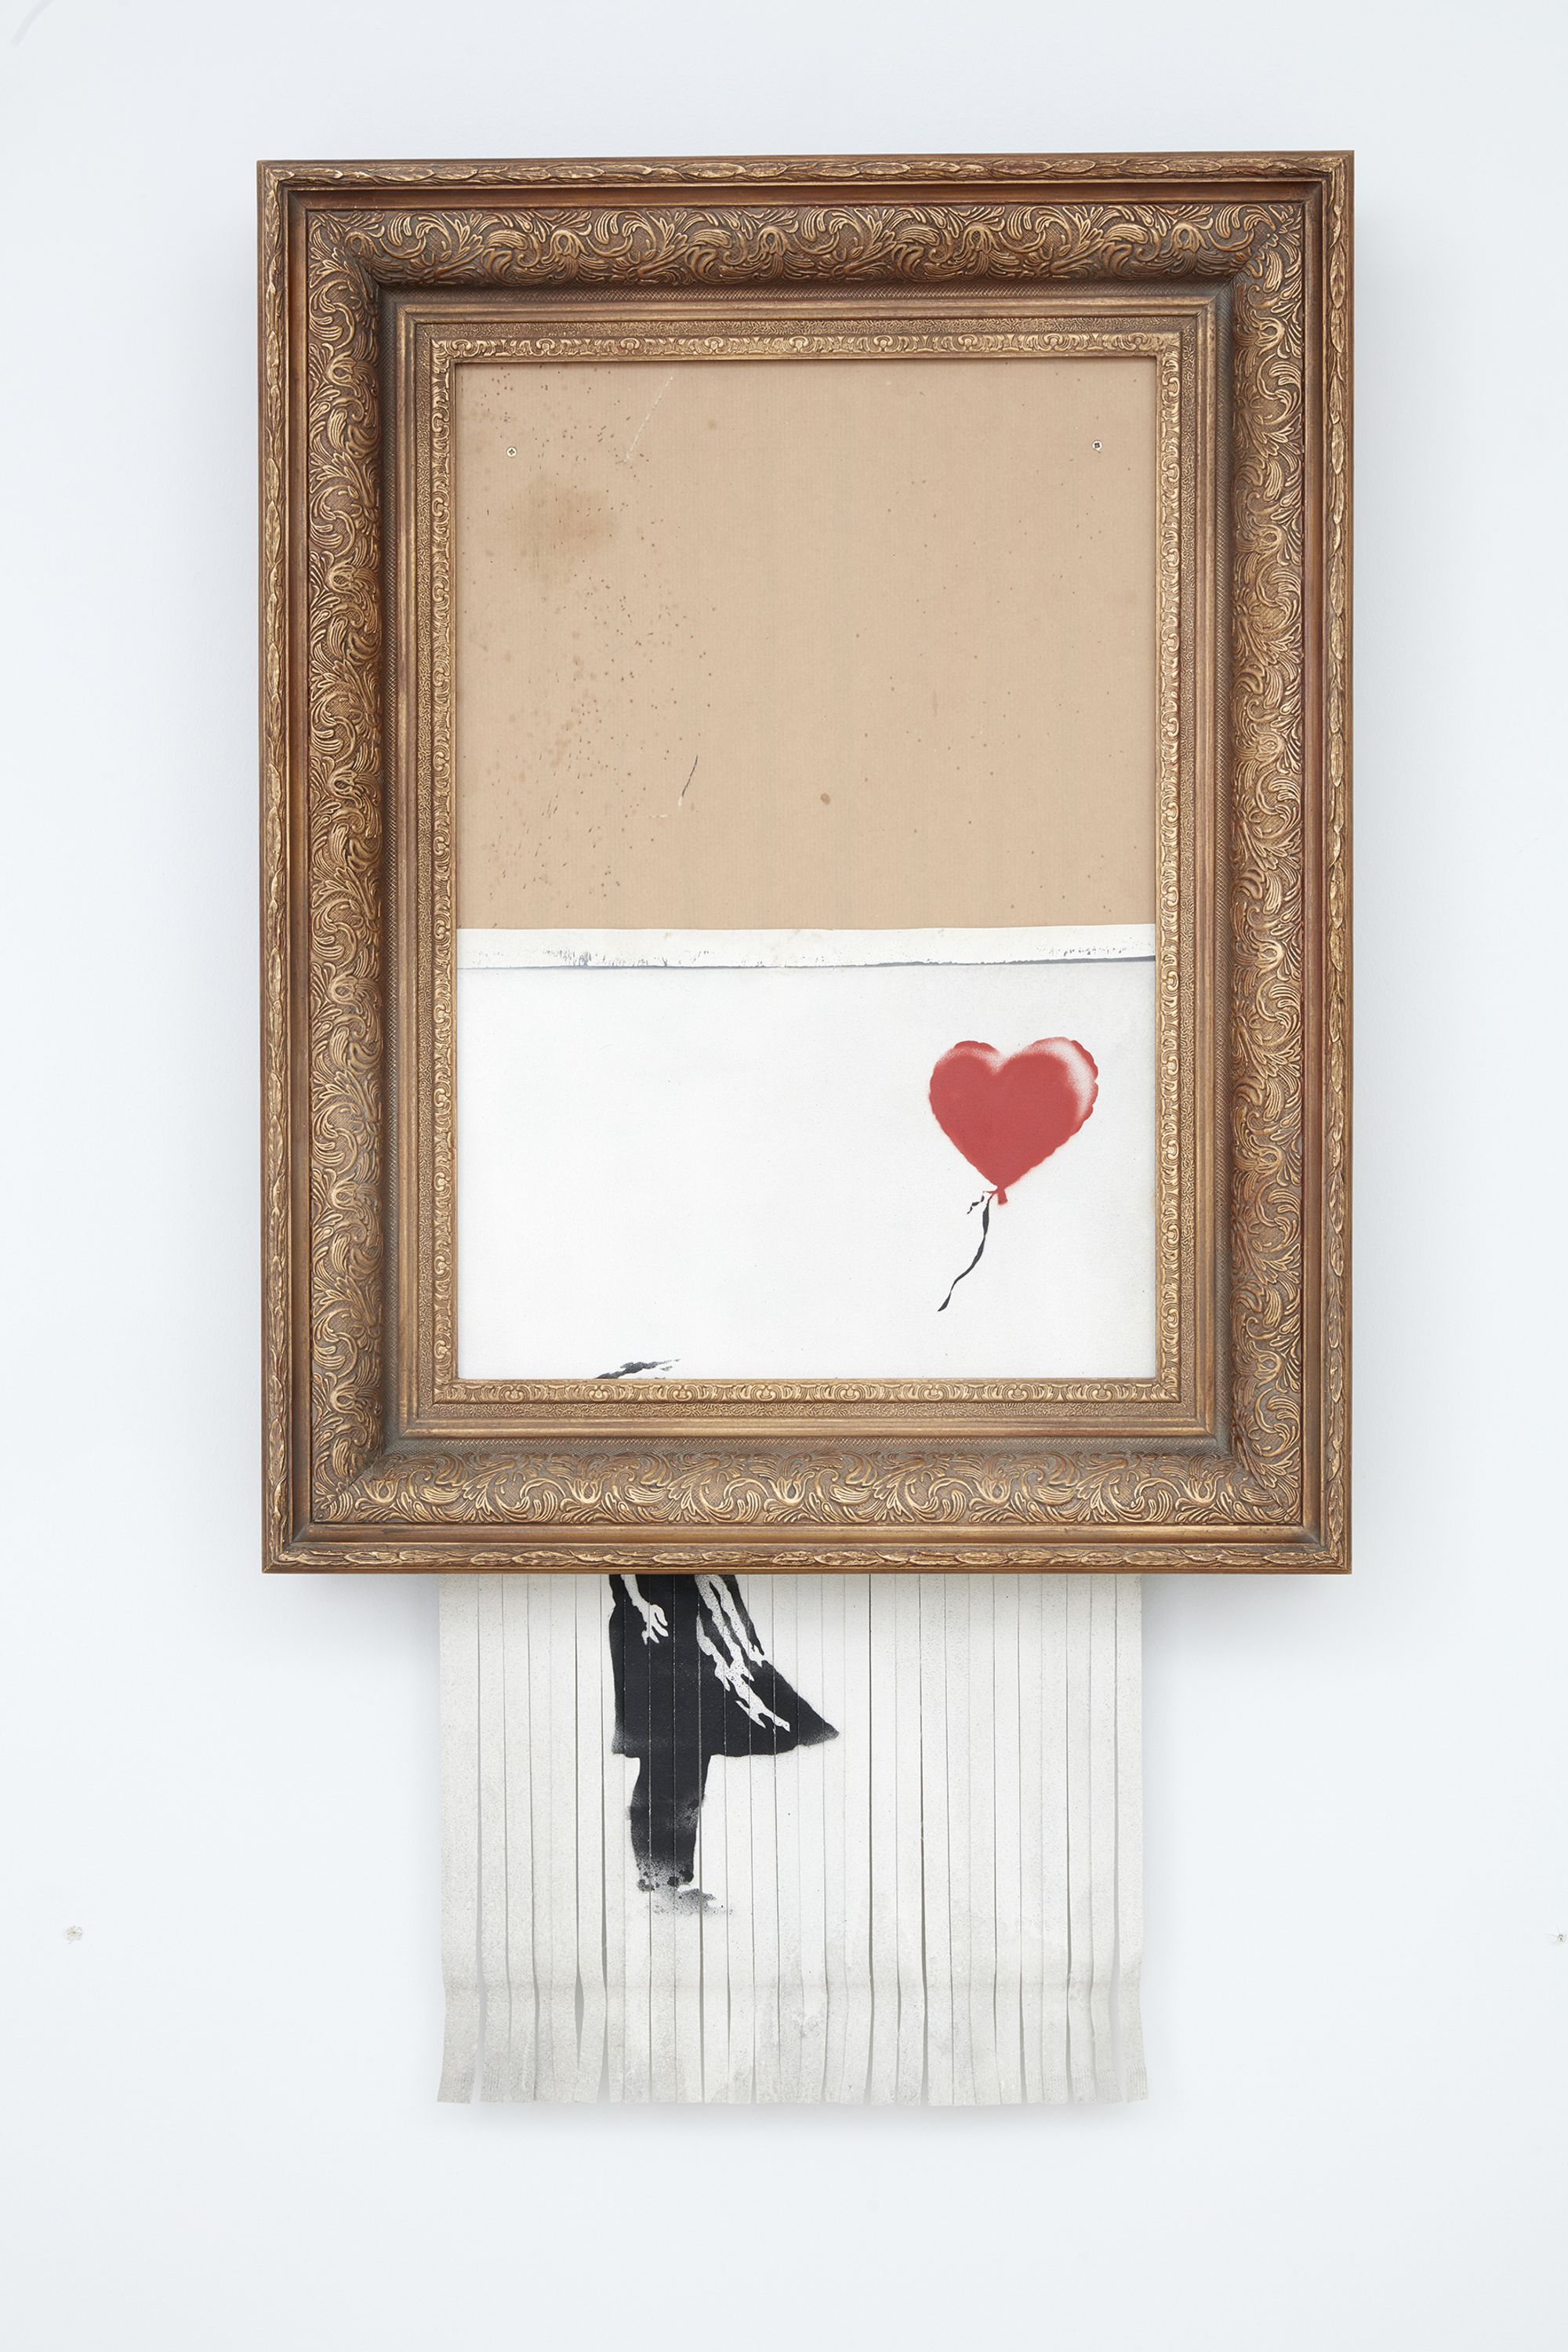 02 Banksy love is in the bin sothebys sale 2021